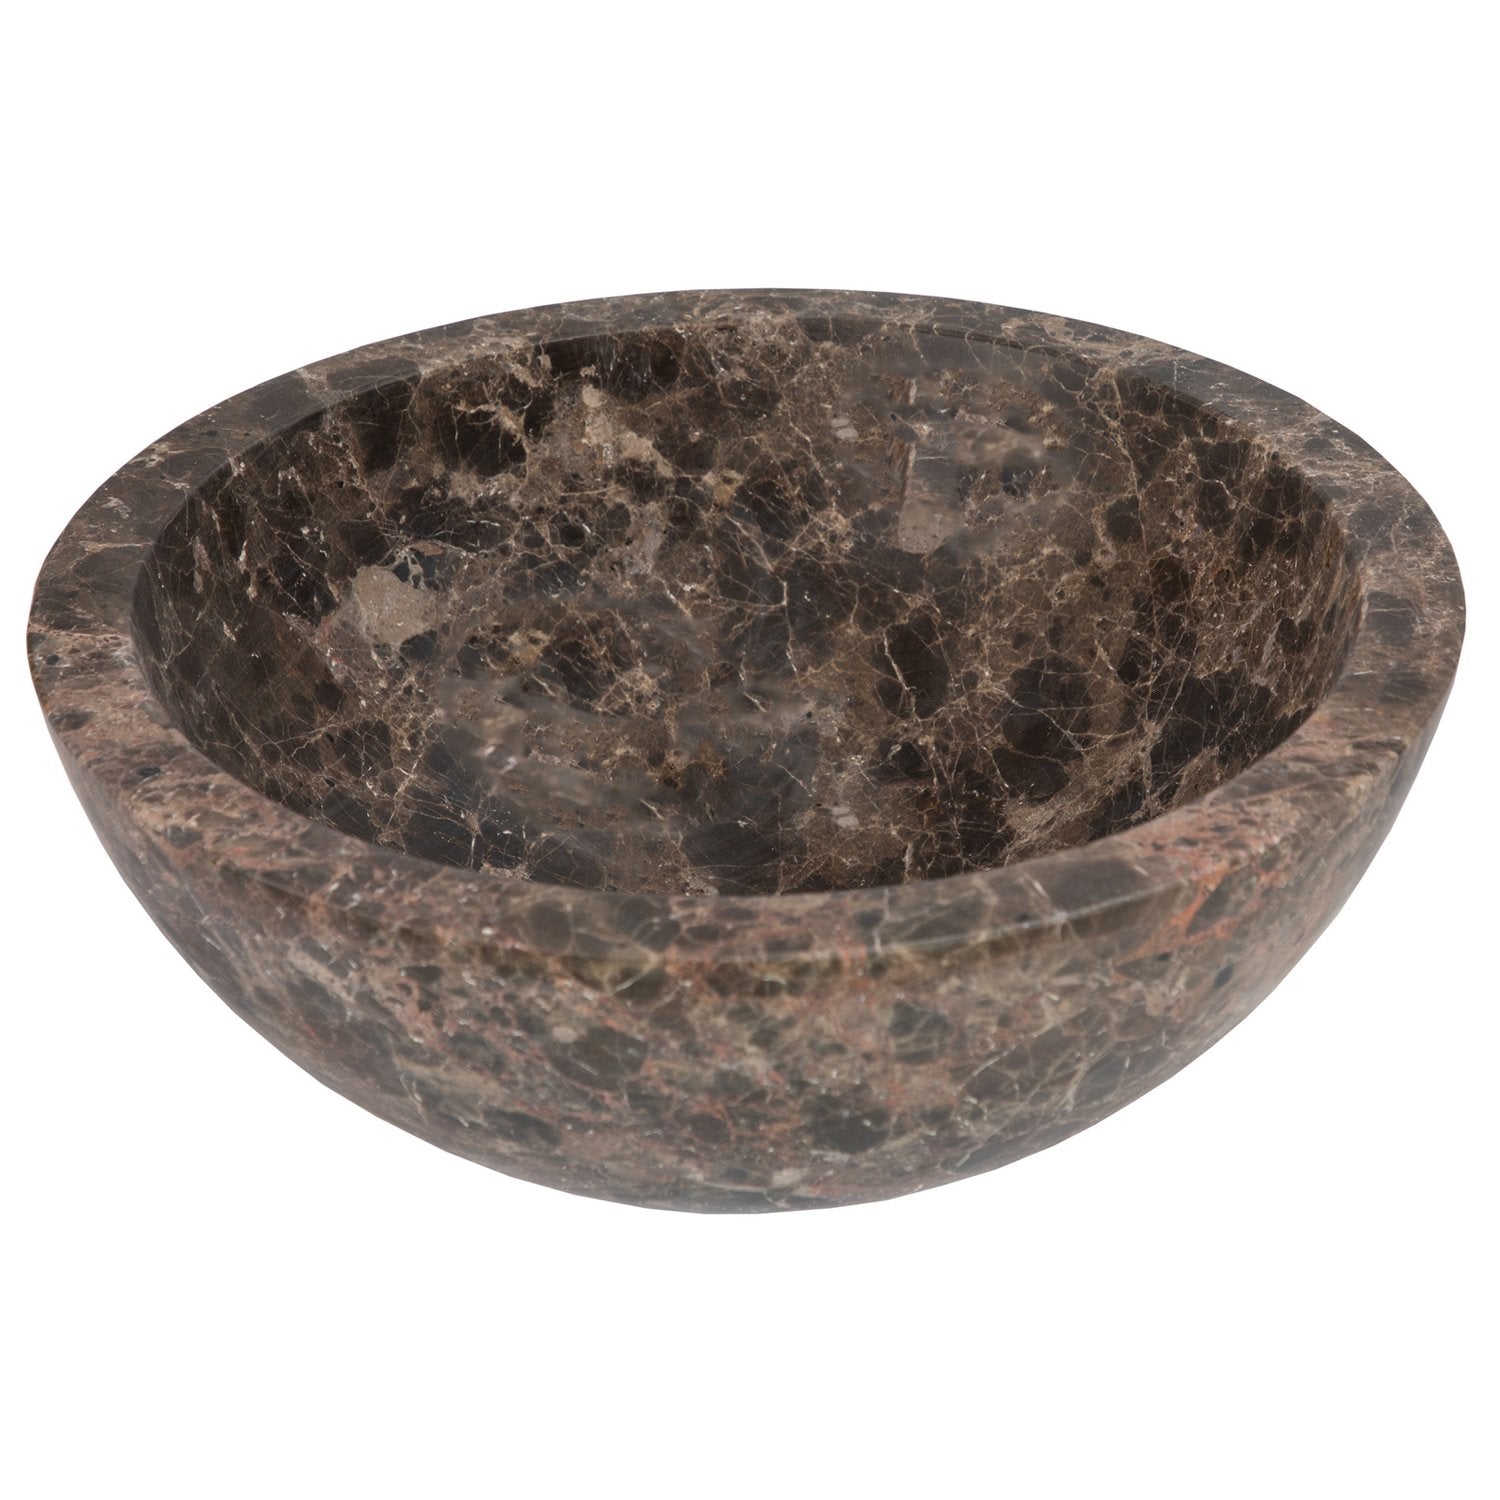 Eden Bath Small Vessel Sink Bowl - Honed Dark Emperador Marble